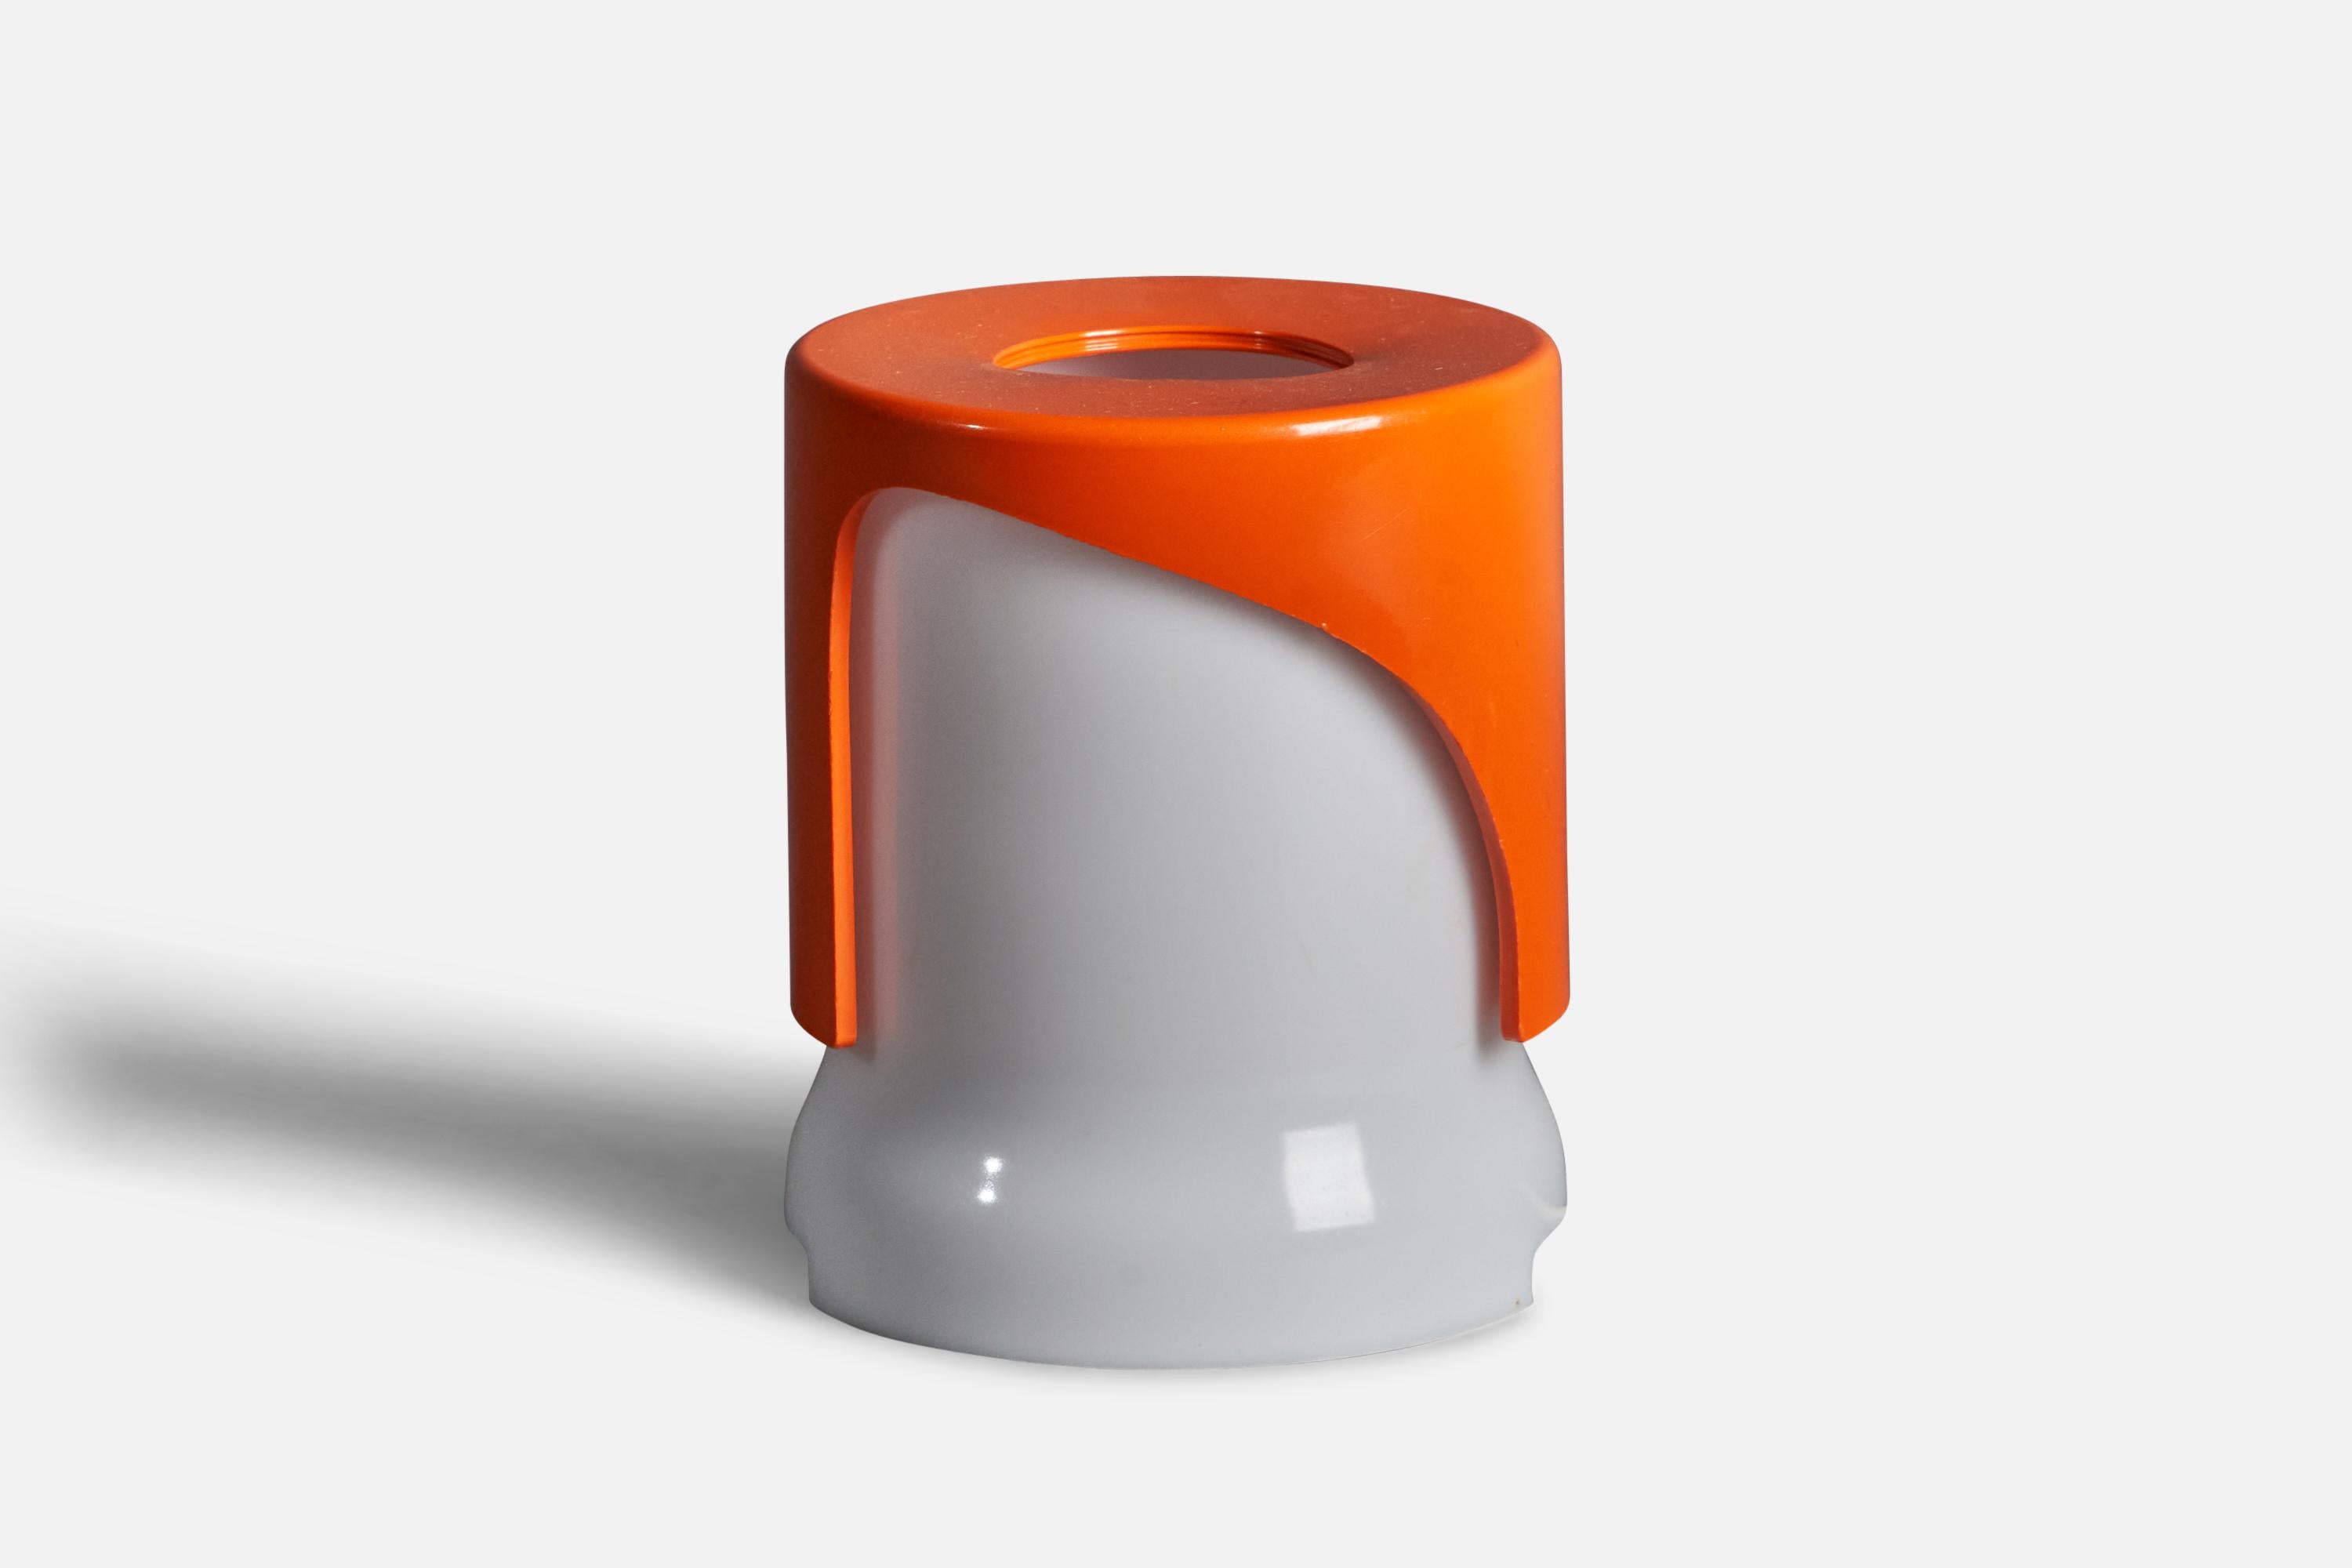 Lampe de table en acrylique blanc et orange conçue par Joe Colombo et produite par Kartell, Italie, vers les années 1960.

Dimensions globales (pouces) : 5.6